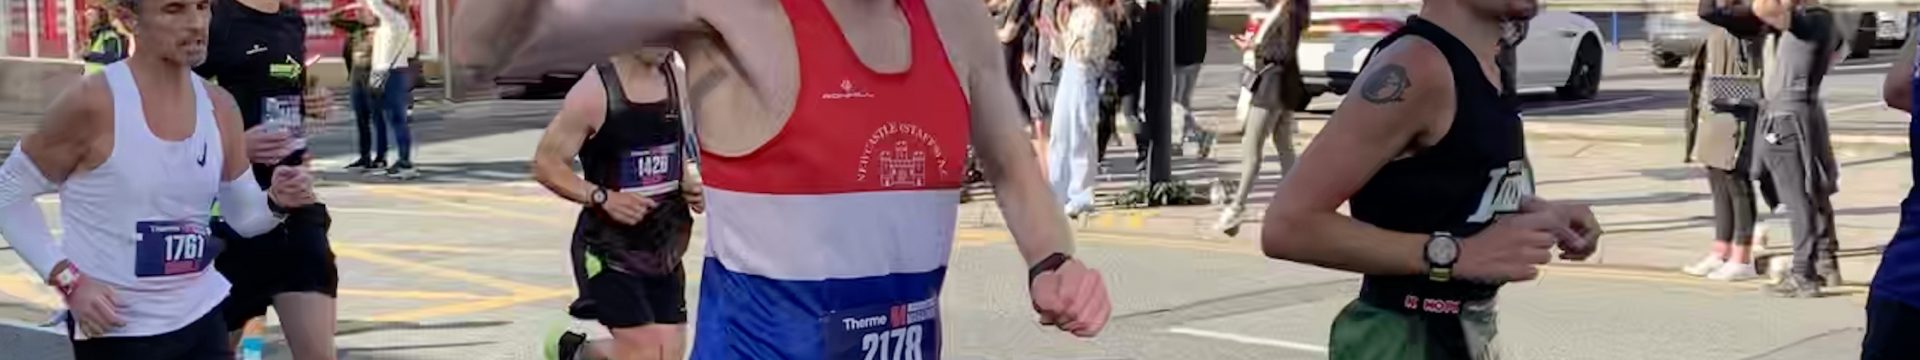 Manchester Marathon and Half Marathon – 10/10/2021